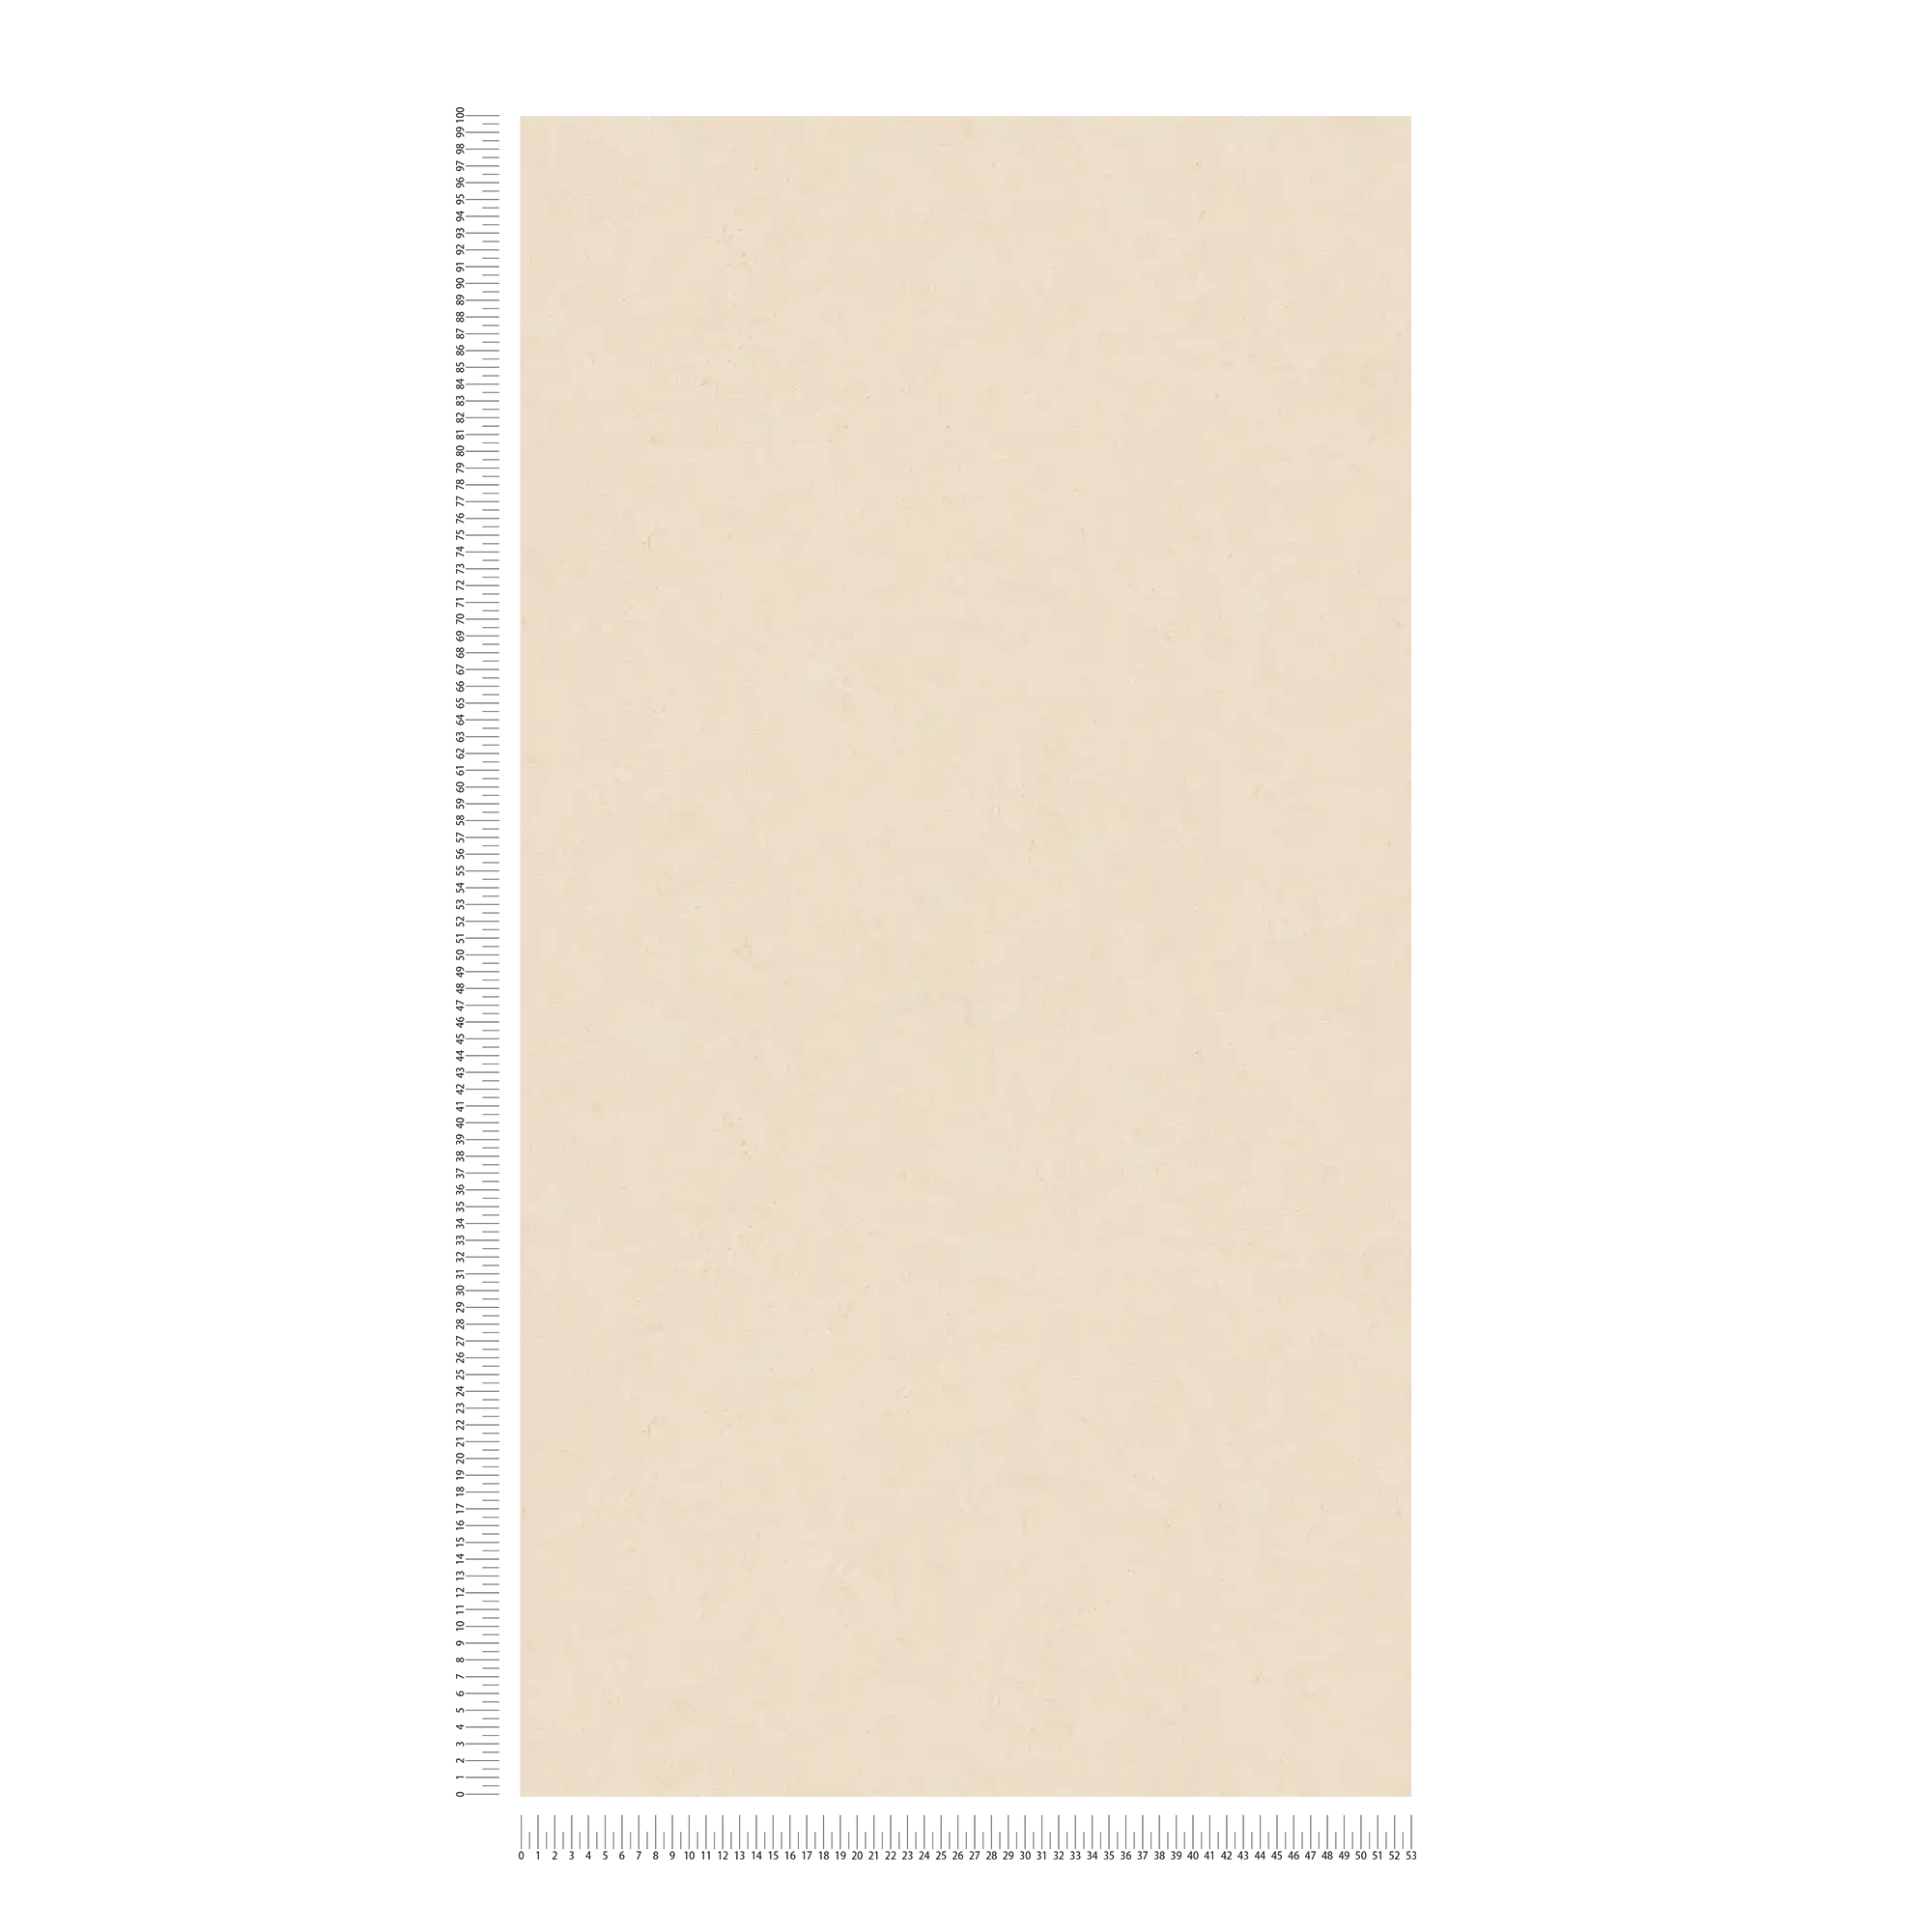             Papier peint uni à l'aspect béton discret - beige, crème
        